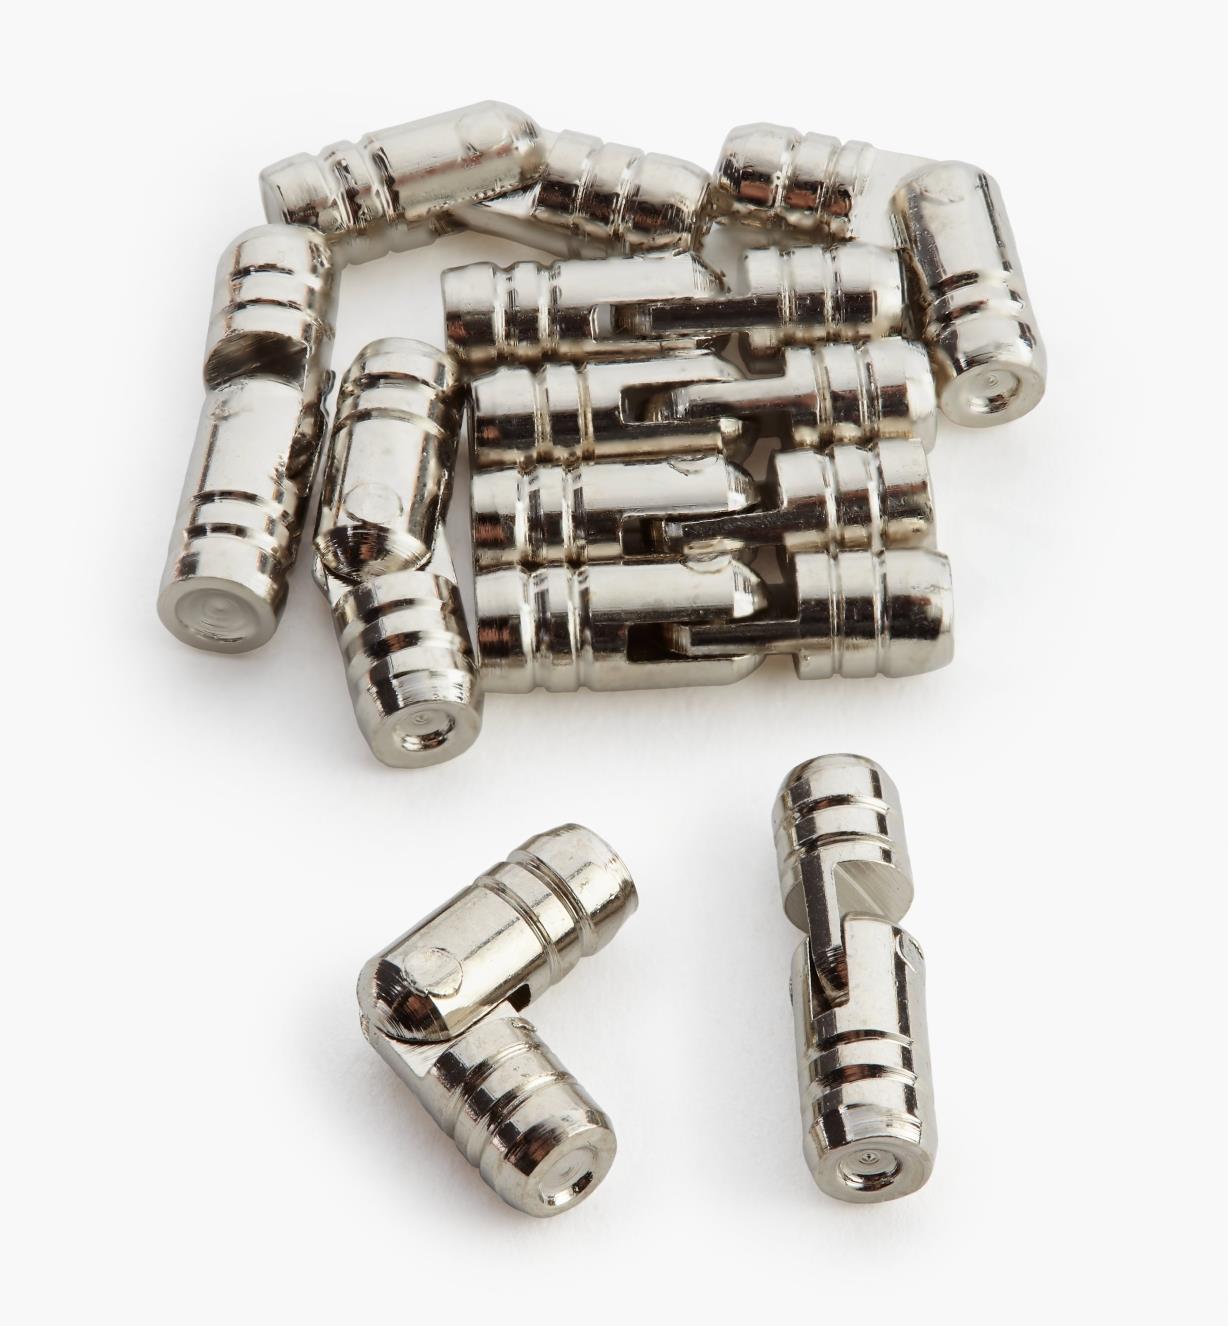 00D8151 - Petites charnières cylindriques, fini nickelé, 5 mm x 18 mm, le paquet de 10